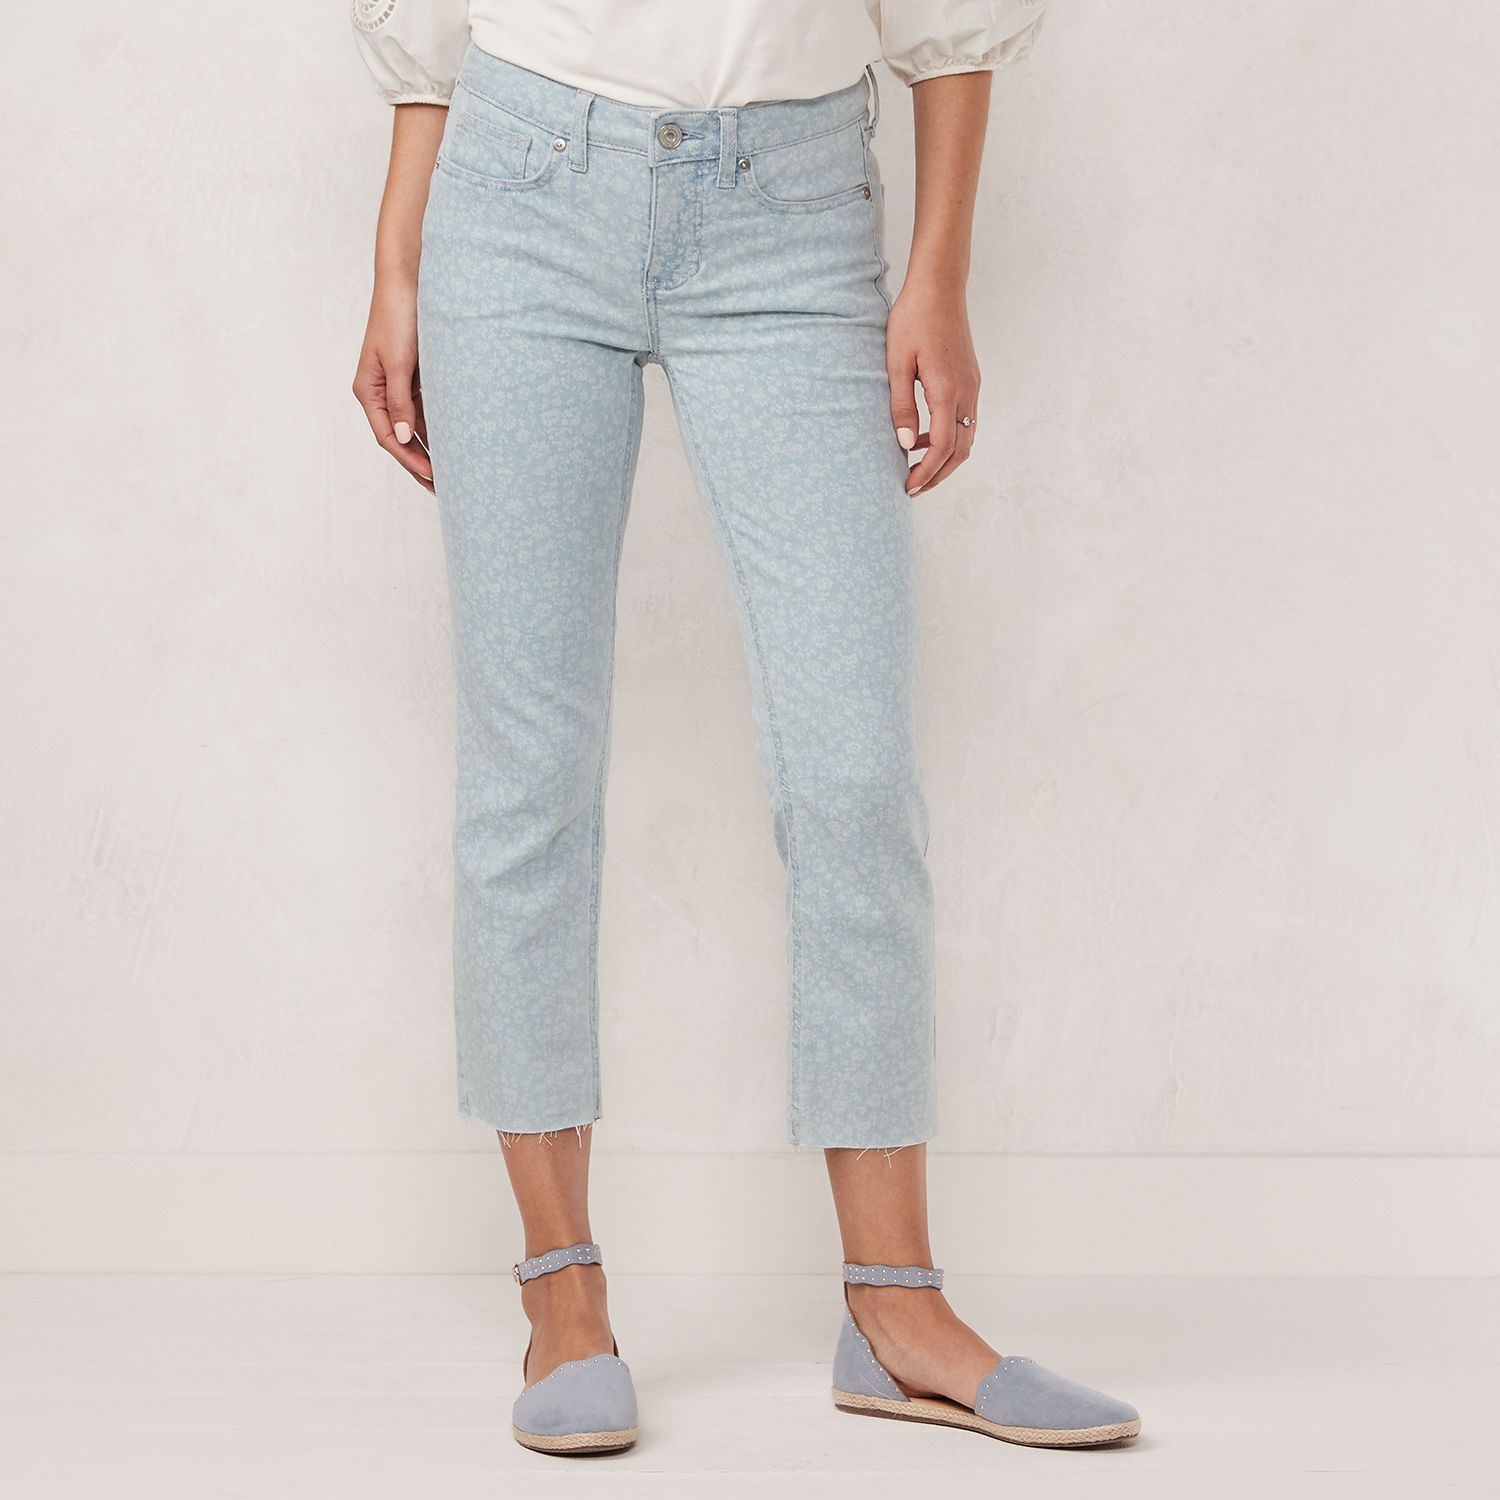 lauren conrad skinny crop jeans